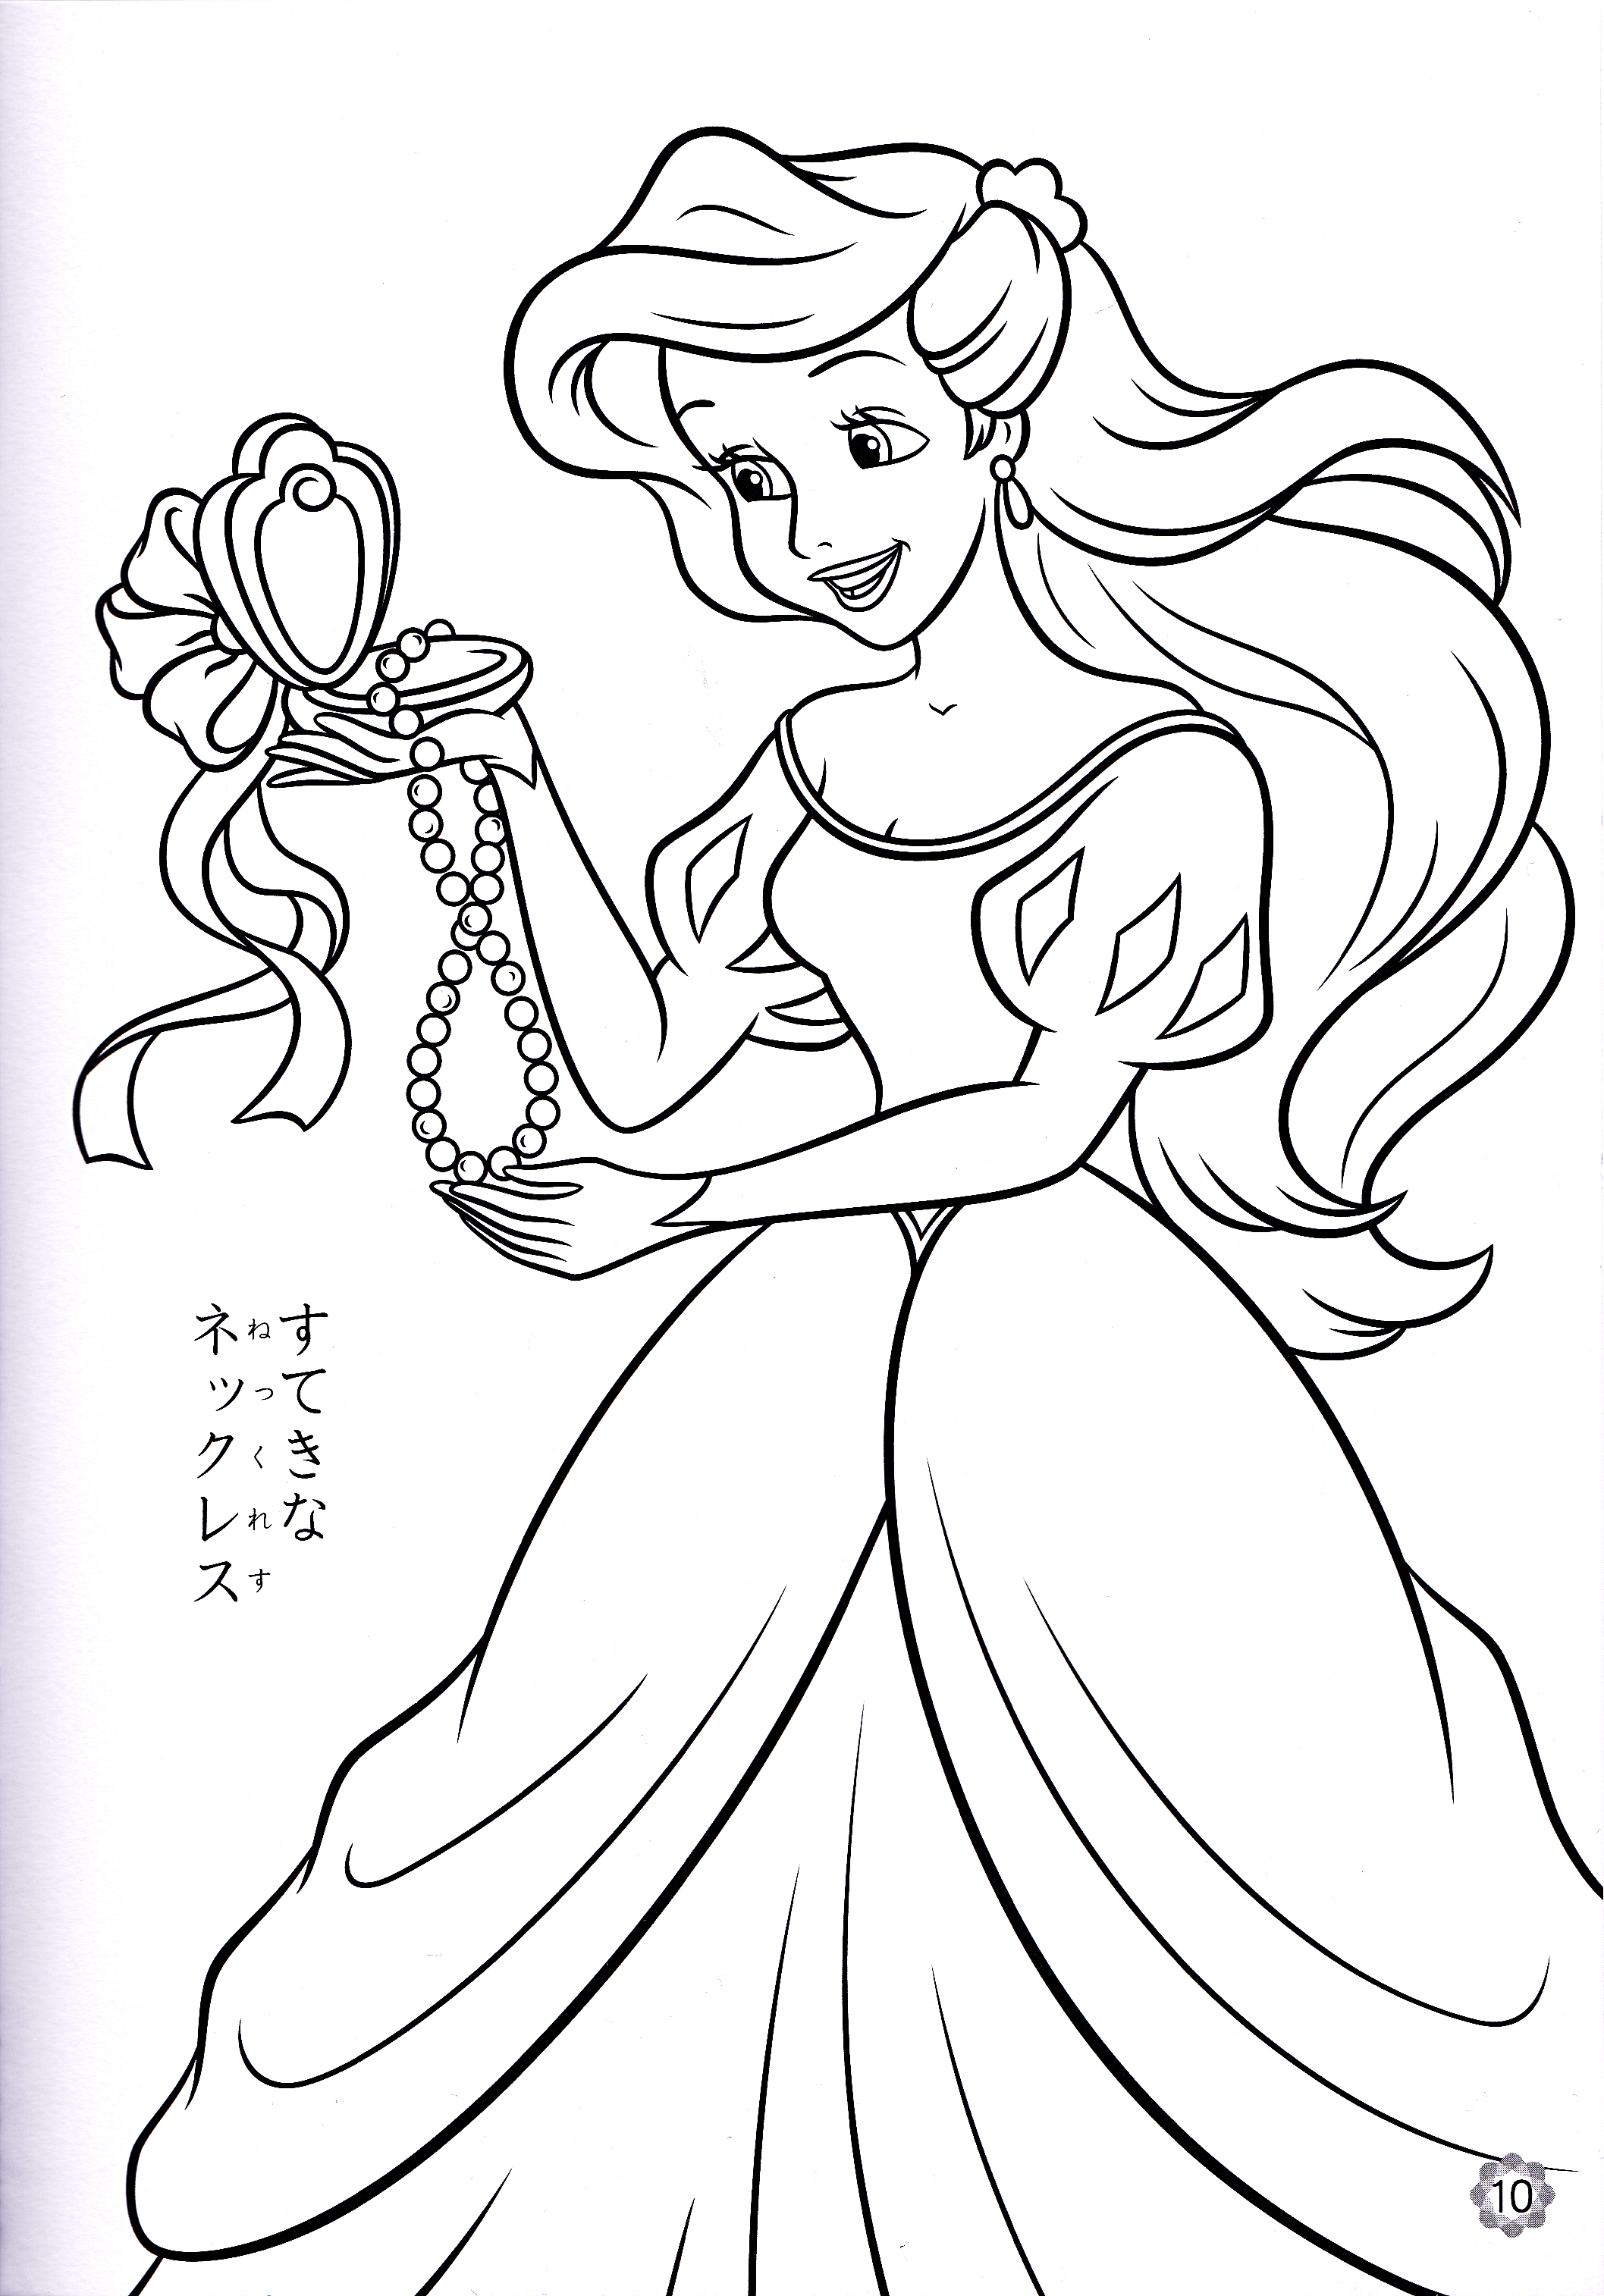  Disney princess coloring book printable 